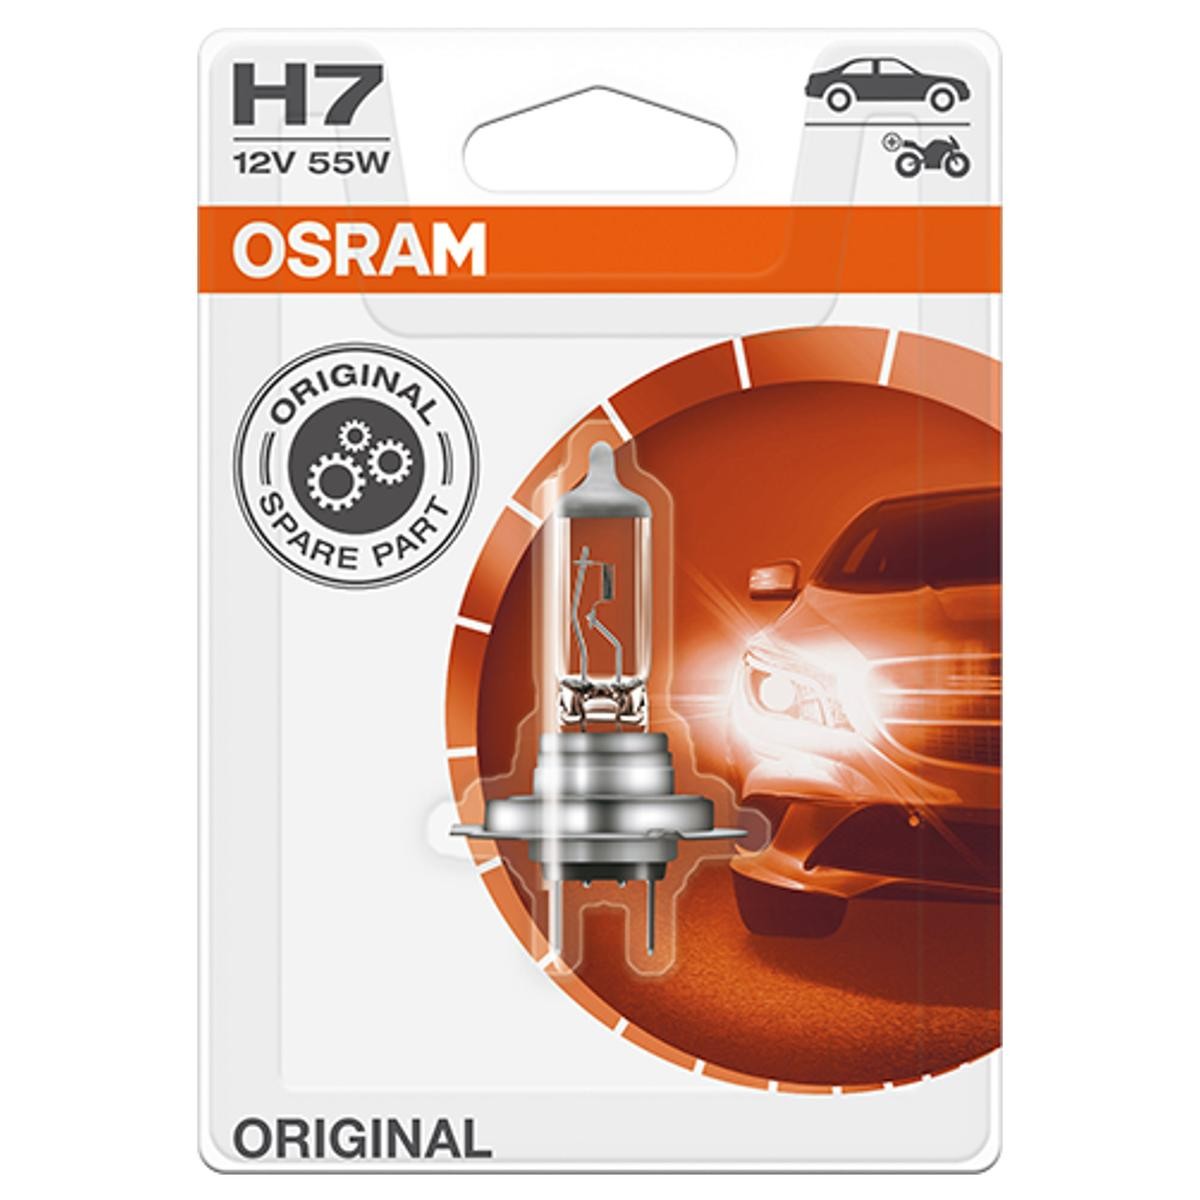 Pirkti H7 OSRAM ORIGINAL H7 12V 55W PX26d 3200K halogenas Lemputė, prožektorius 64210-01B nebrangu